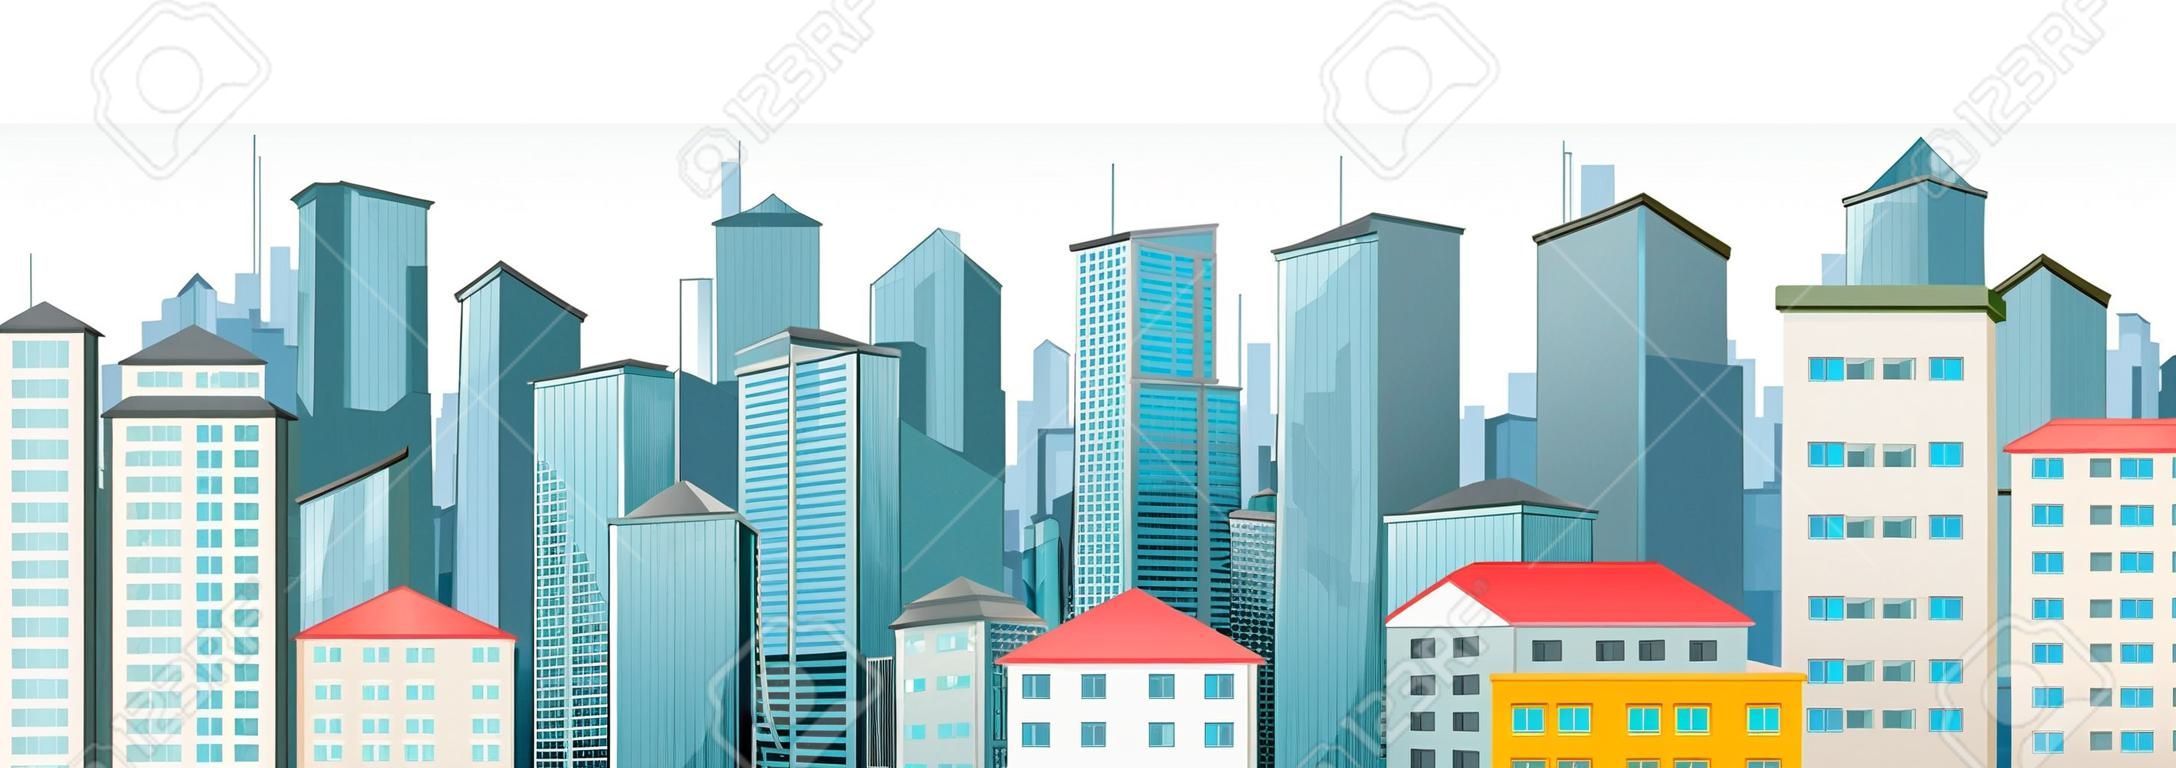 Város jelenet magas épületek illusztráció